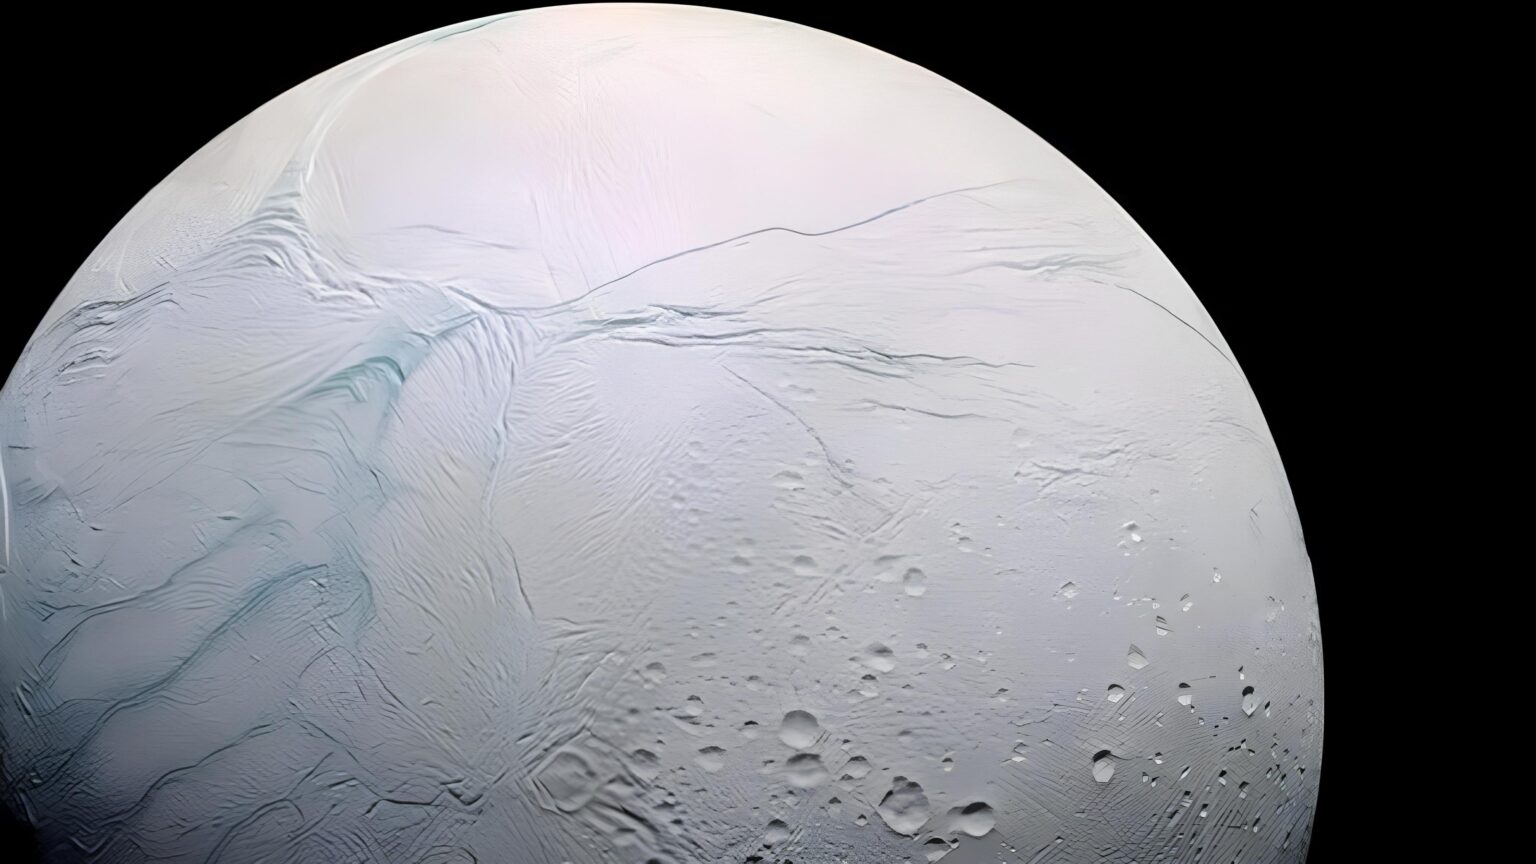 Encelado, la luna di Saturno